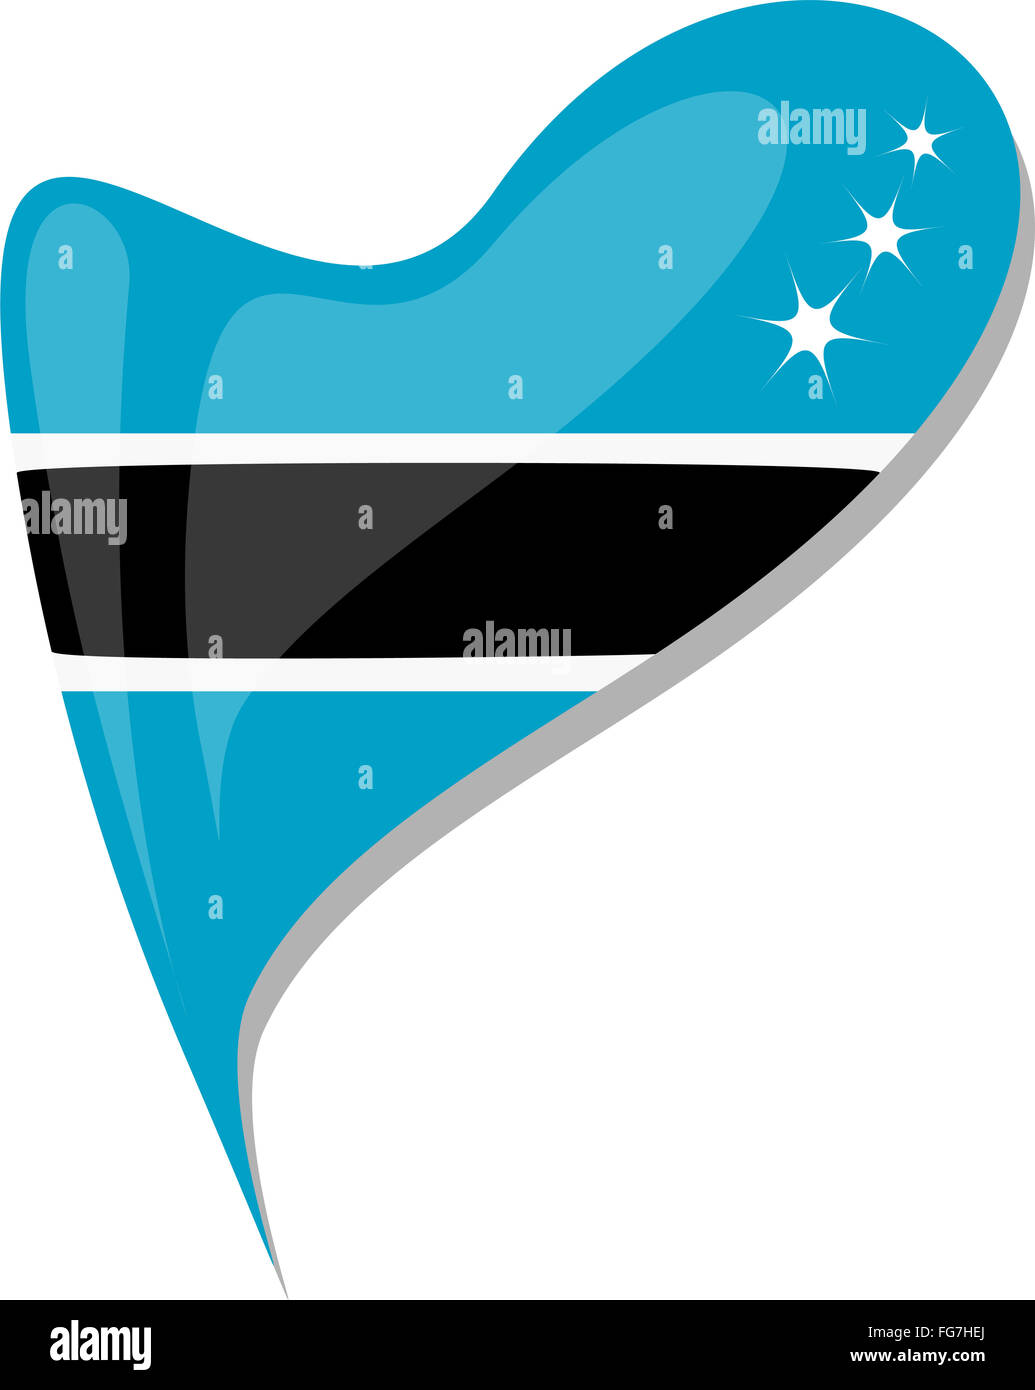 Botswana en el corazón. Icono de bandera nacional de Botswana de vectores. Foto de stock